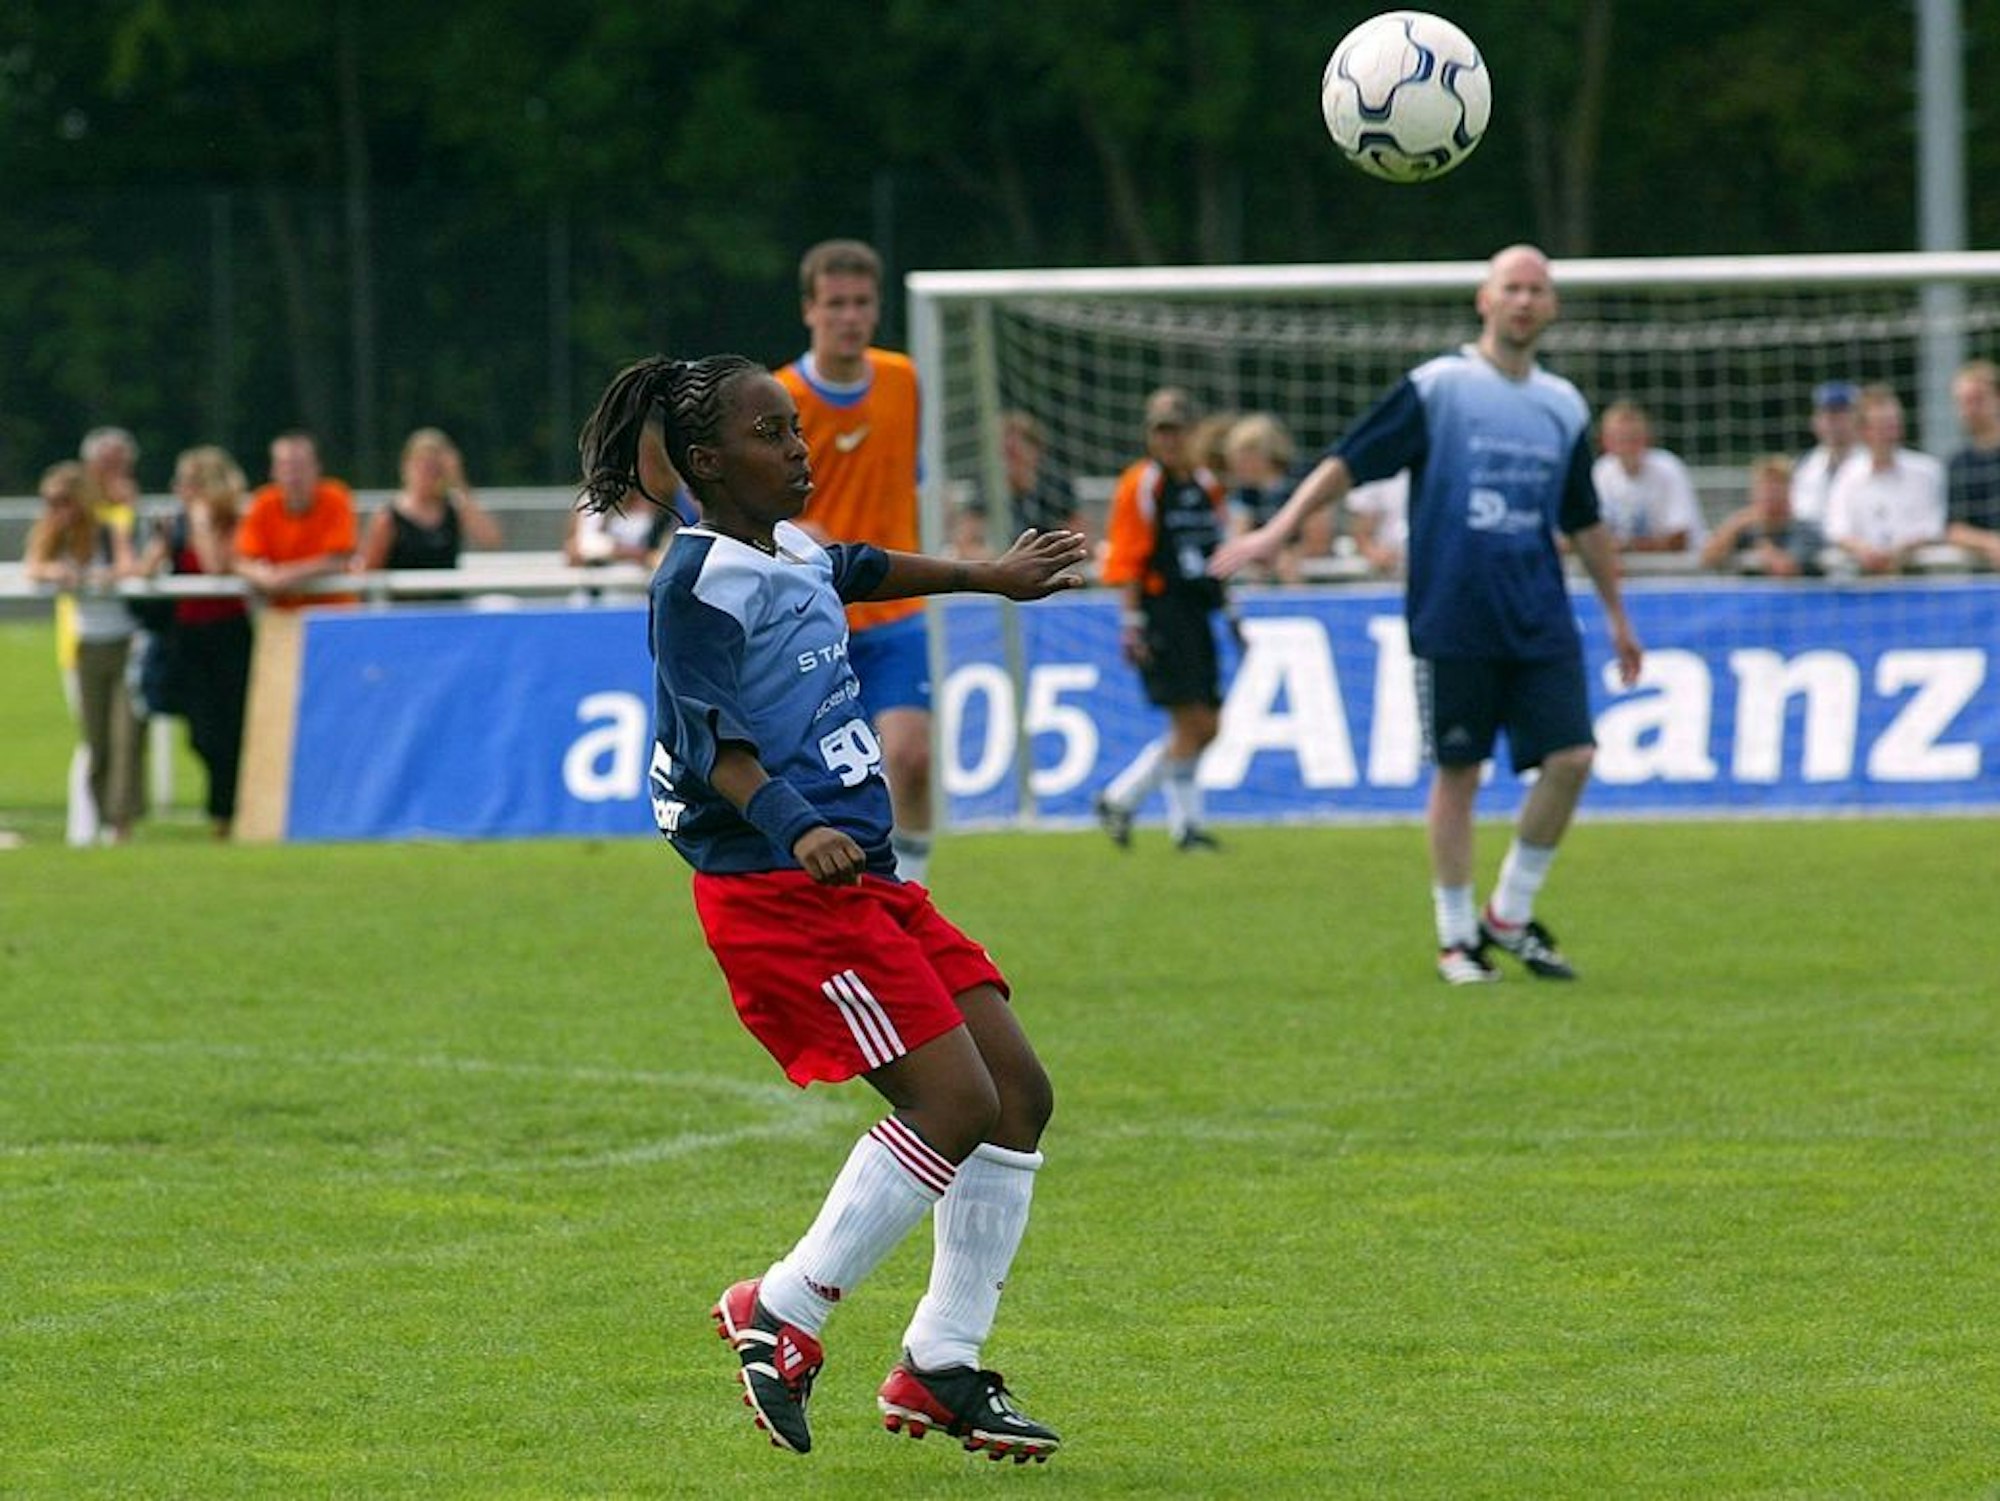 Eine Fußballerin spielt einen Ball in der Luft, im Hintergrund sind zwei Männer zu sehen, die gleiche Trikots tragen.